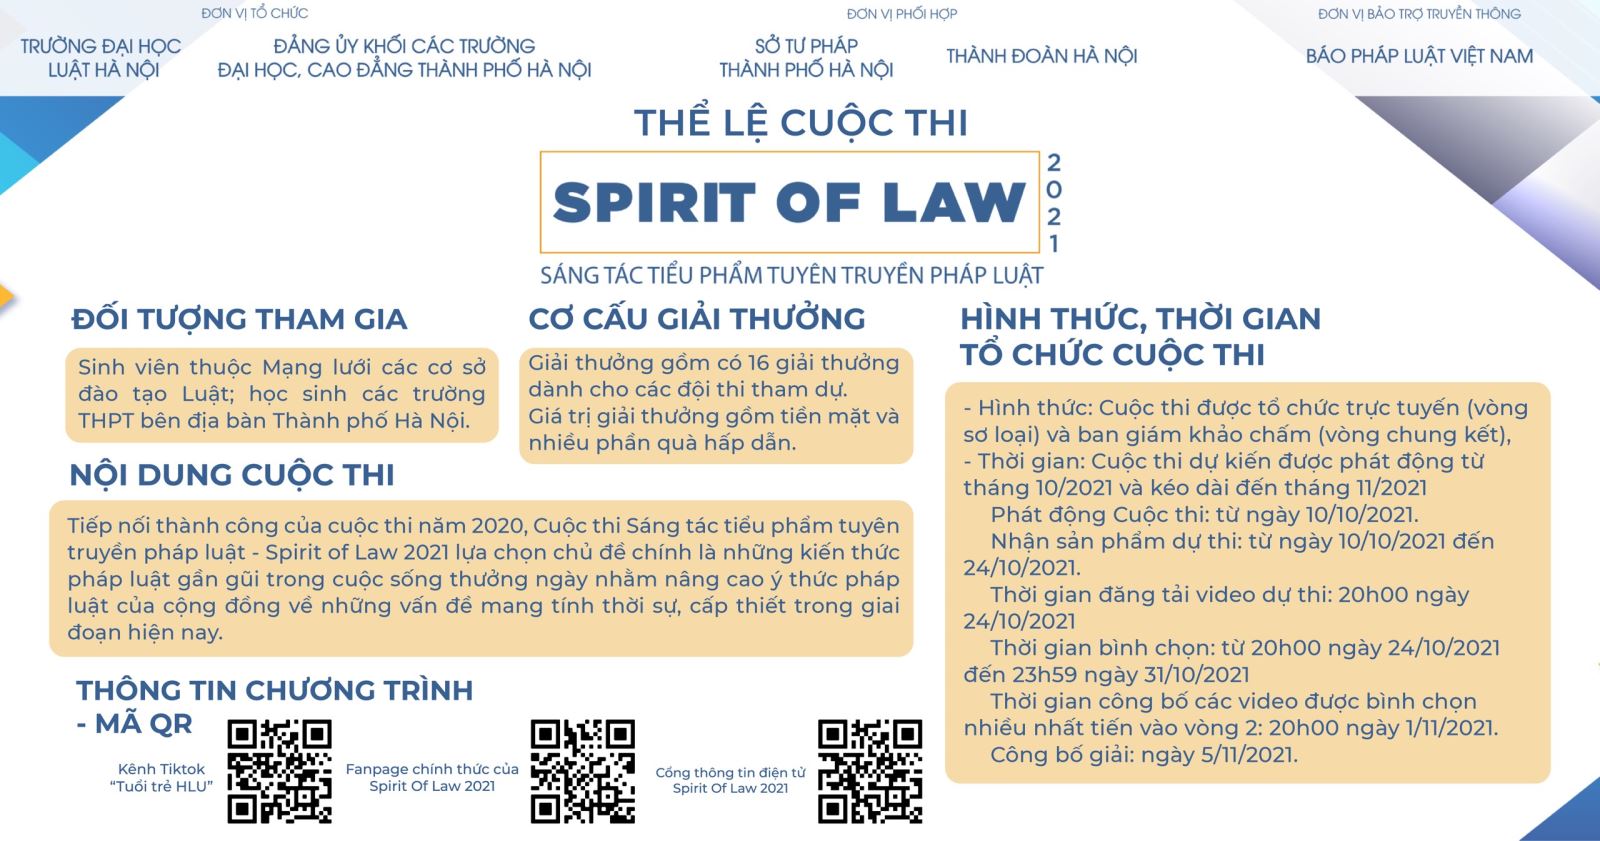 Đại học Luật Hà Nội phát động Cuộc thi sáng tác tiểu phẩm tuyên truyền, phổ biến giáo dục pháp luật năm 2021 ảnh 1